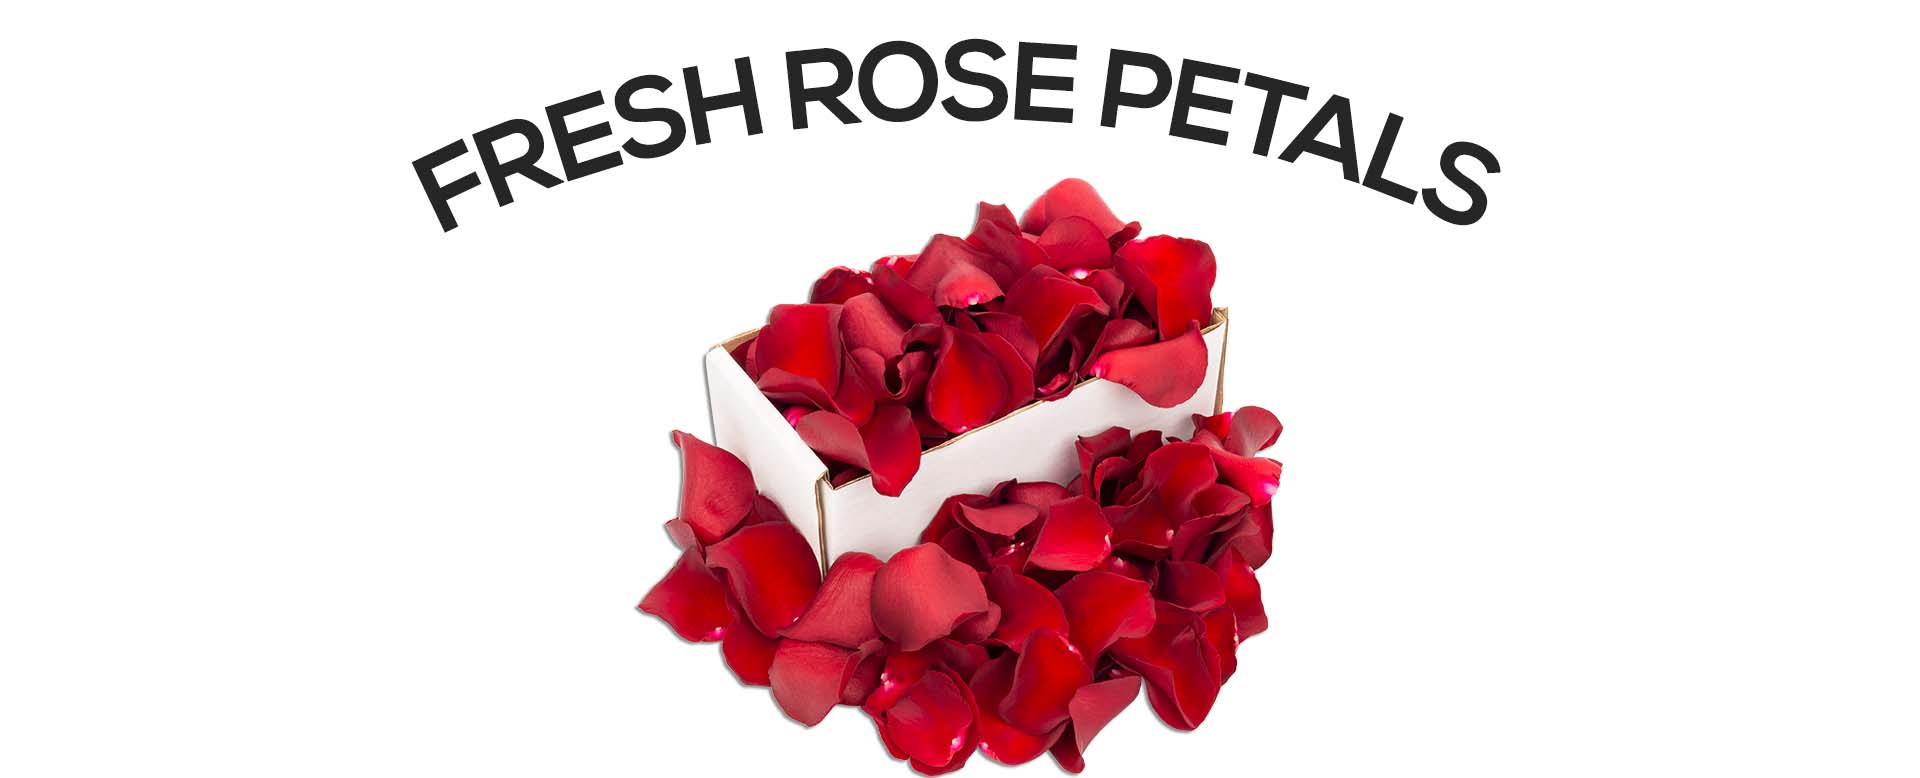 Send fresh rose petals